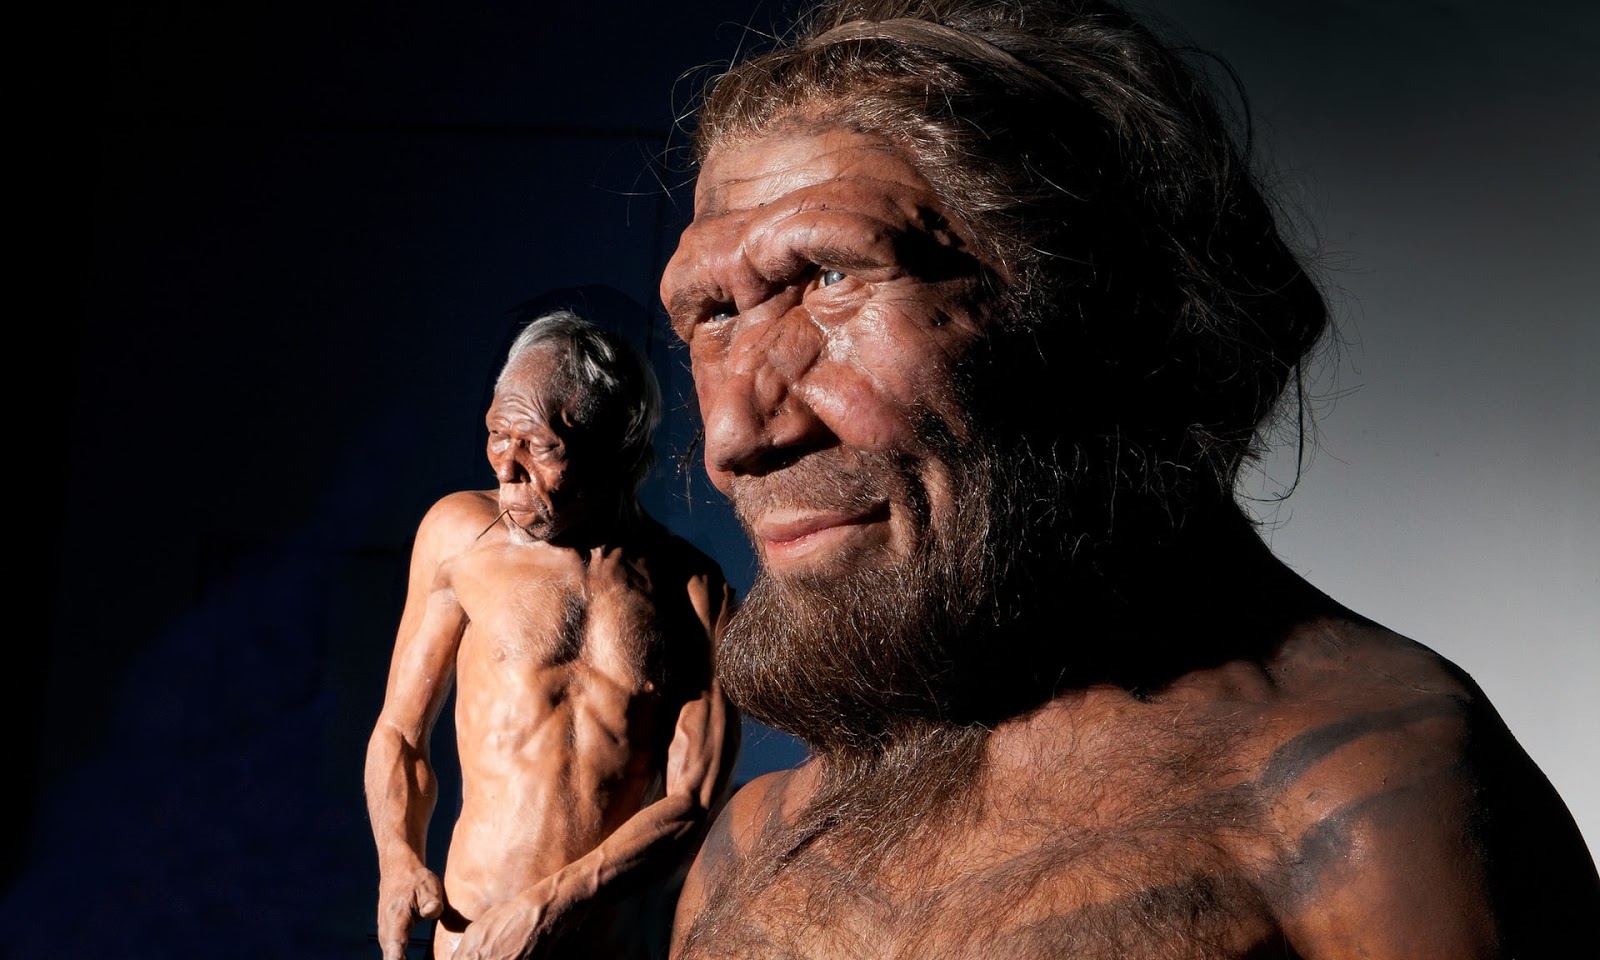 Modelos de Kennis de Homo sapiens (izquierda) y un Neandertal. Foto: Kevin Webb/NHM Image Resources/The Natural History Museum, London